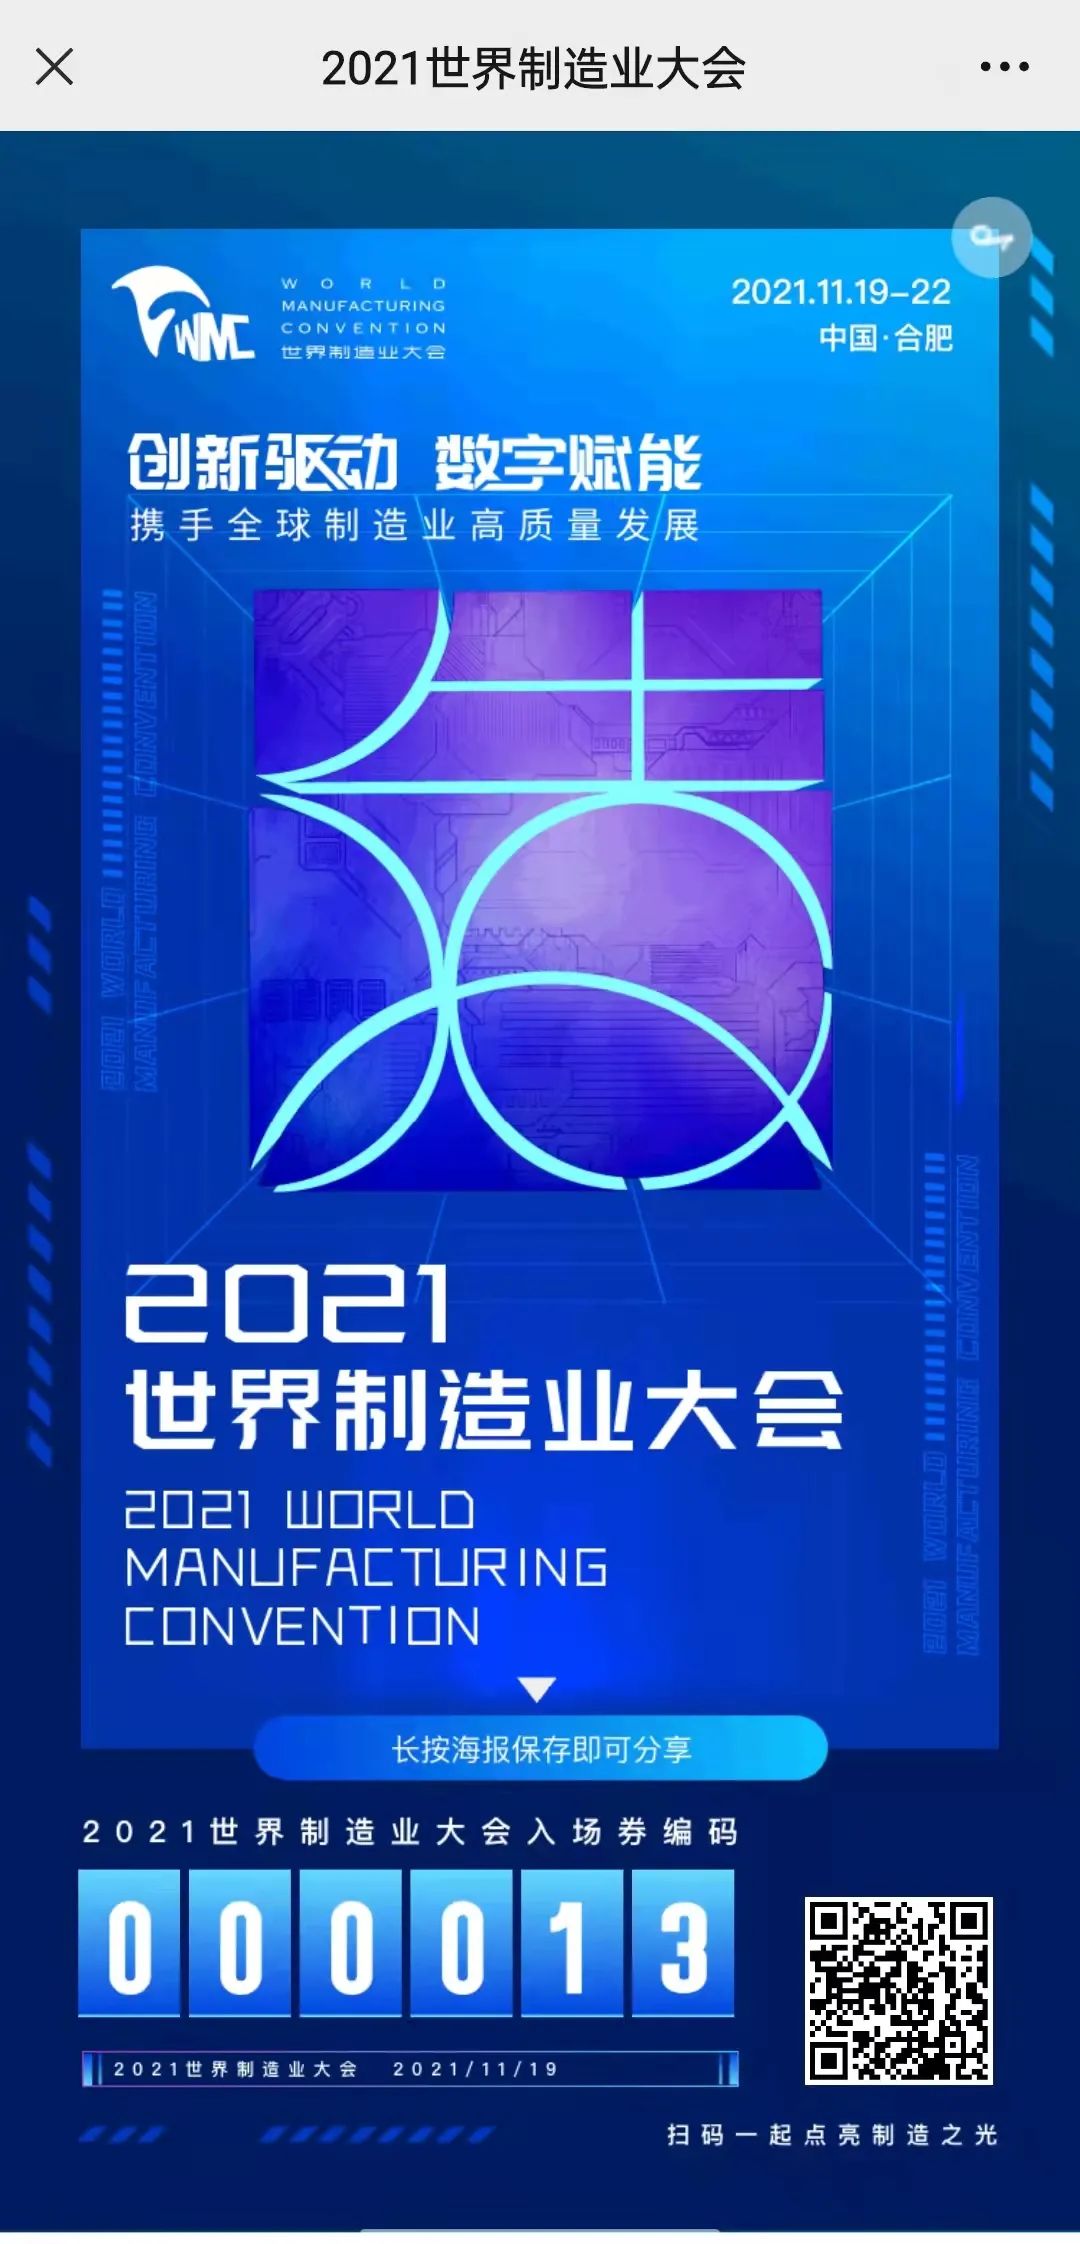 2021世界制造业大会将举办23场重大活动